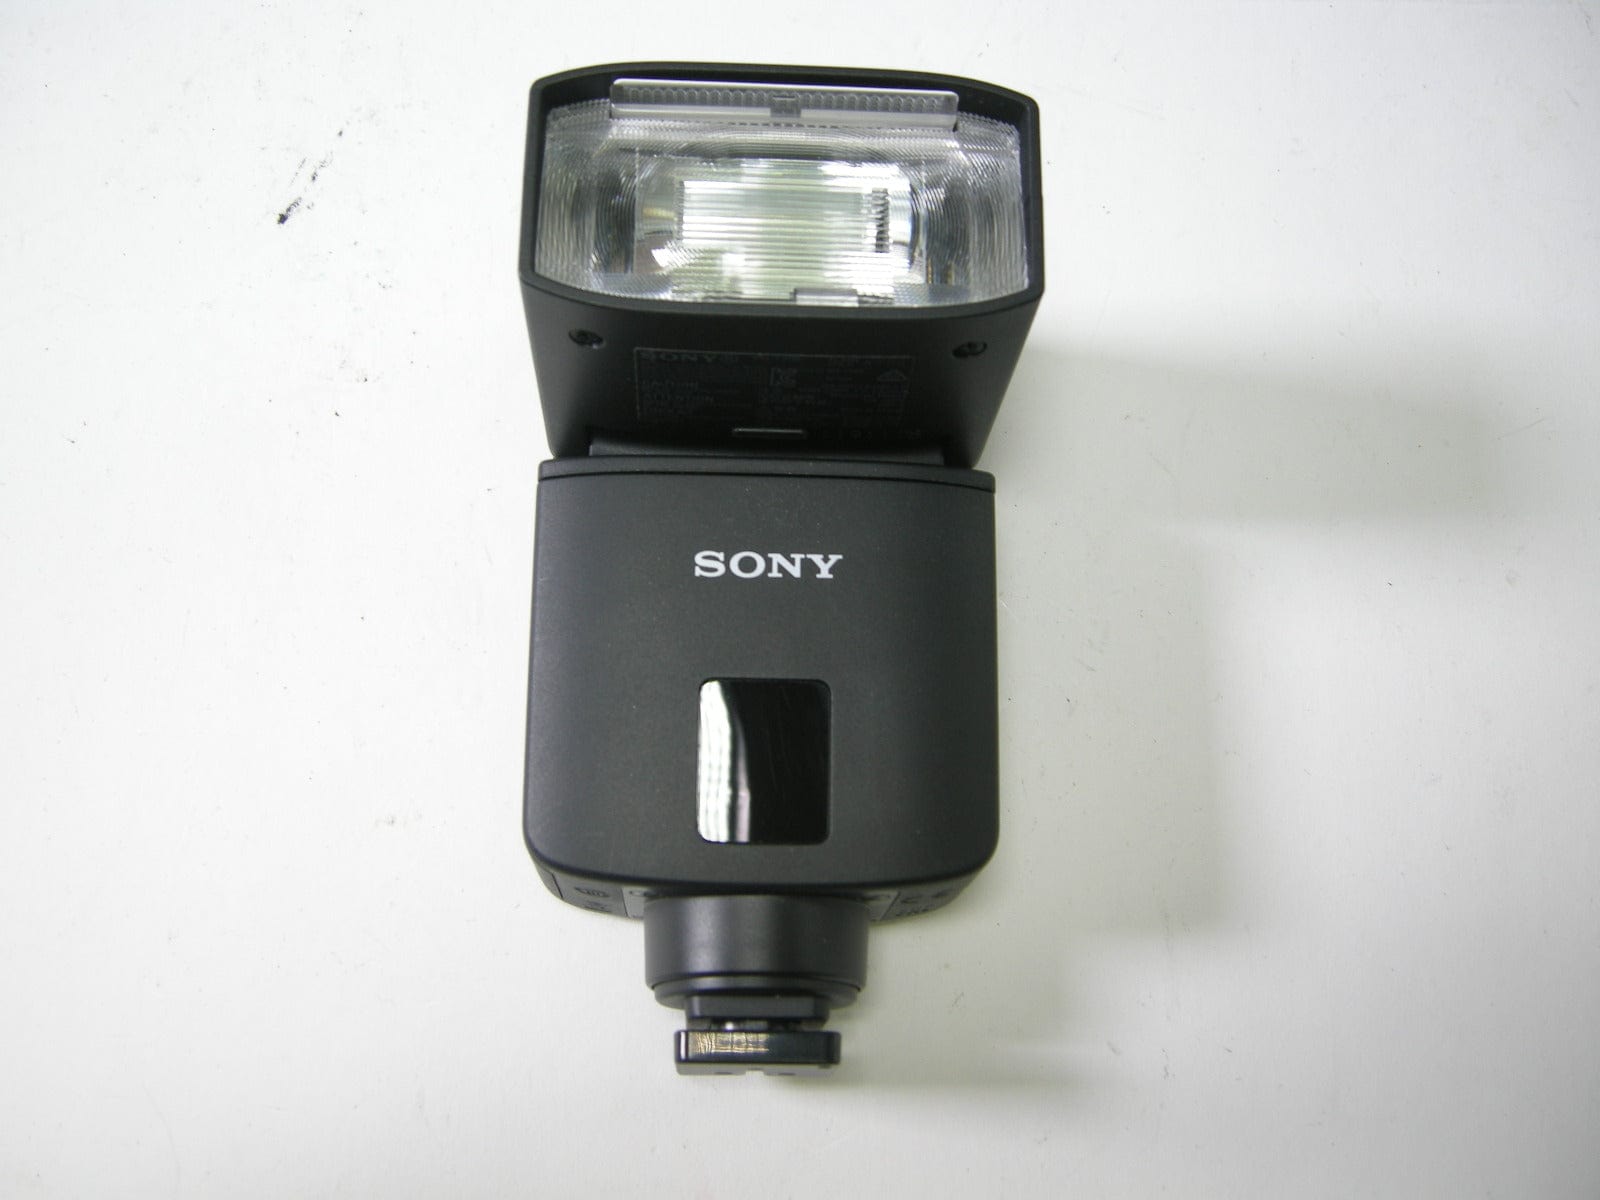 ソニー フラッシュ SONY HVL-F32M - ビデオカメラ